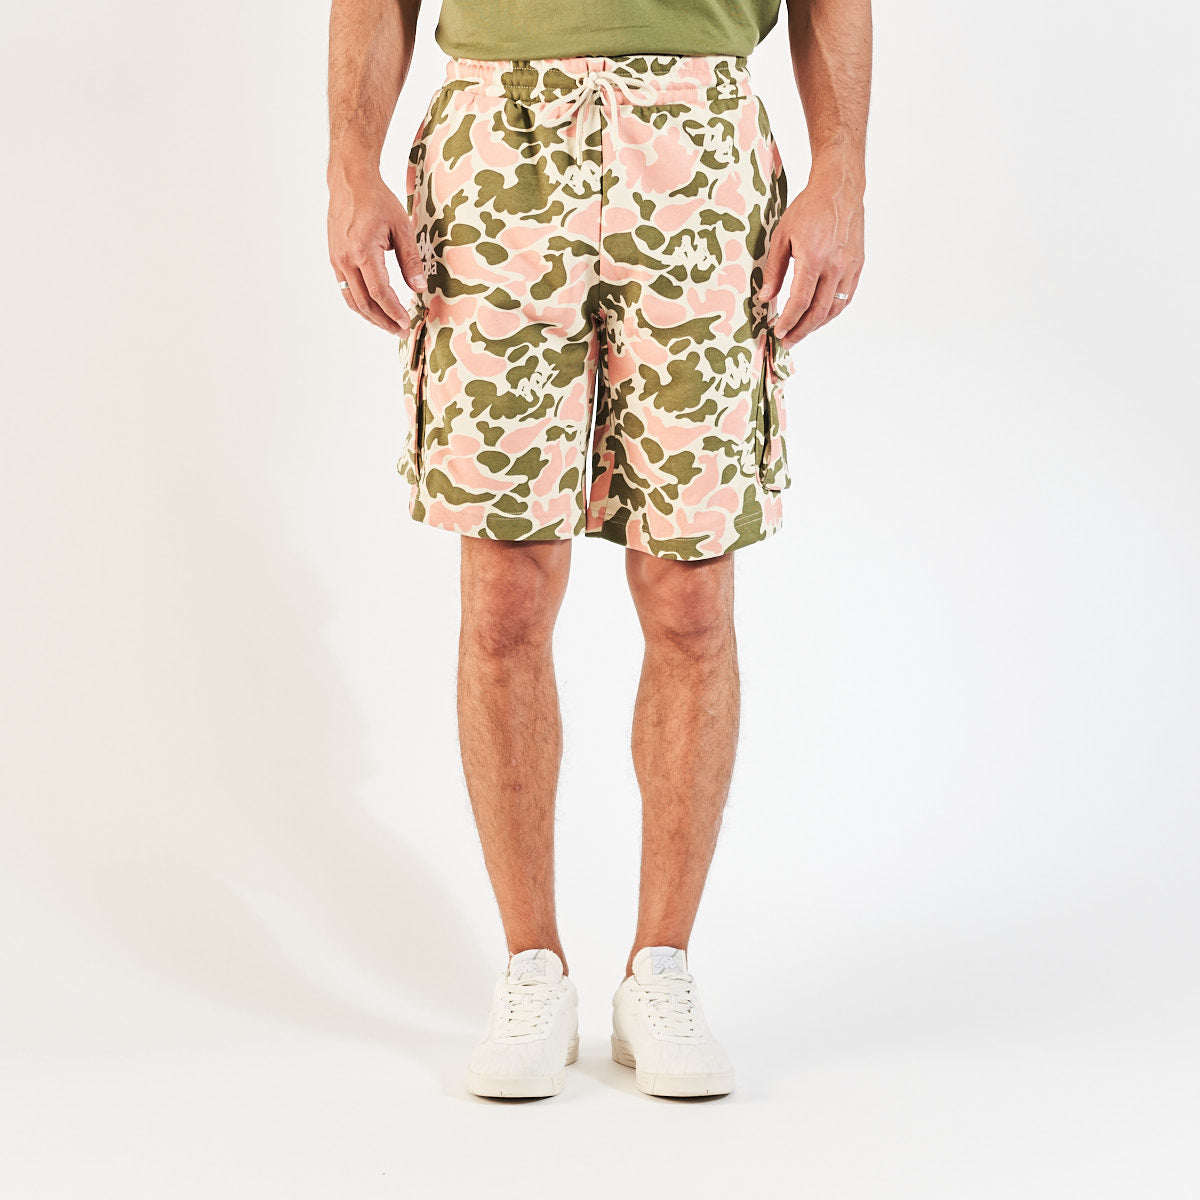 Pantalones cortes verde Pathos Authentic hombre - imagen 1